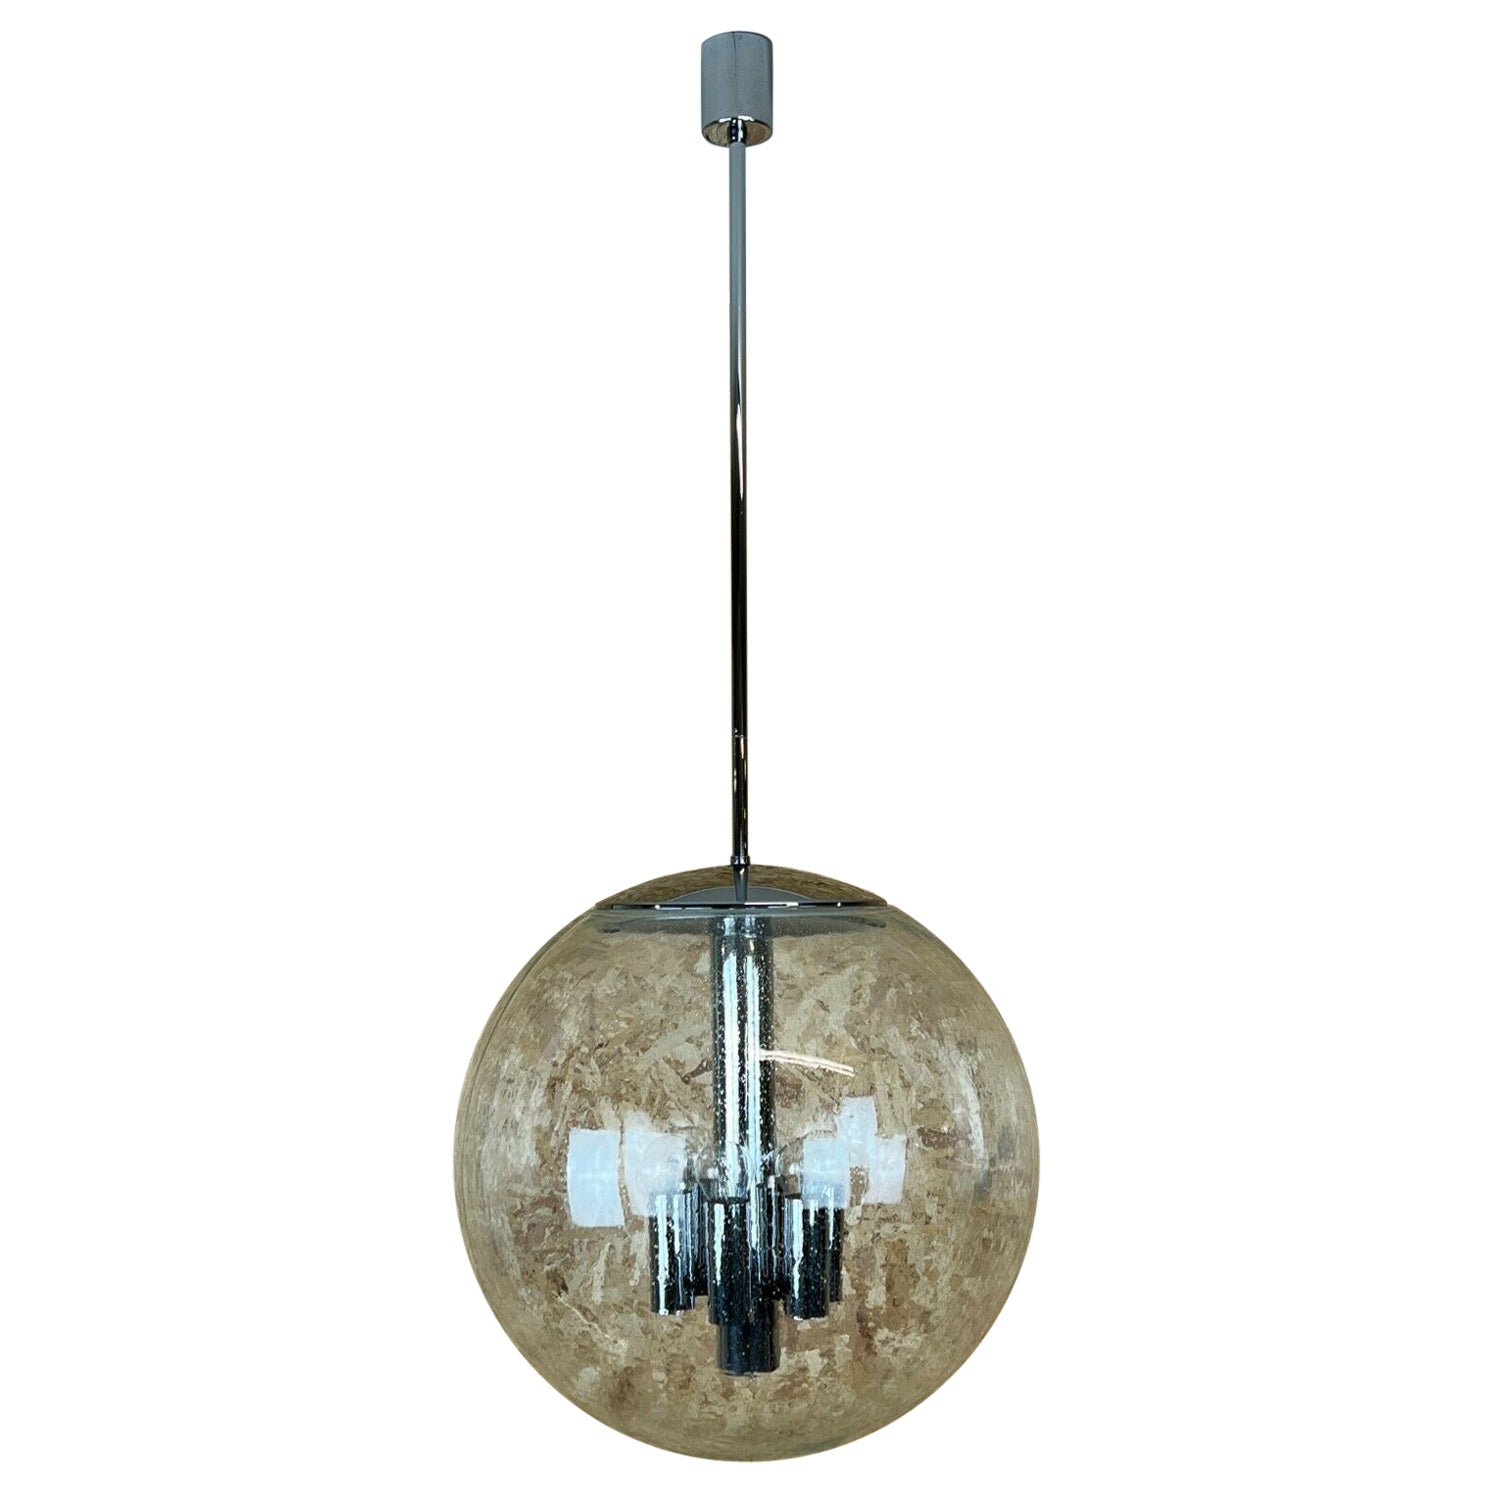 XXL 60s 70s Lamp Light Ceiling Lamp Limburg Spherical Lamp Ball Design 60s